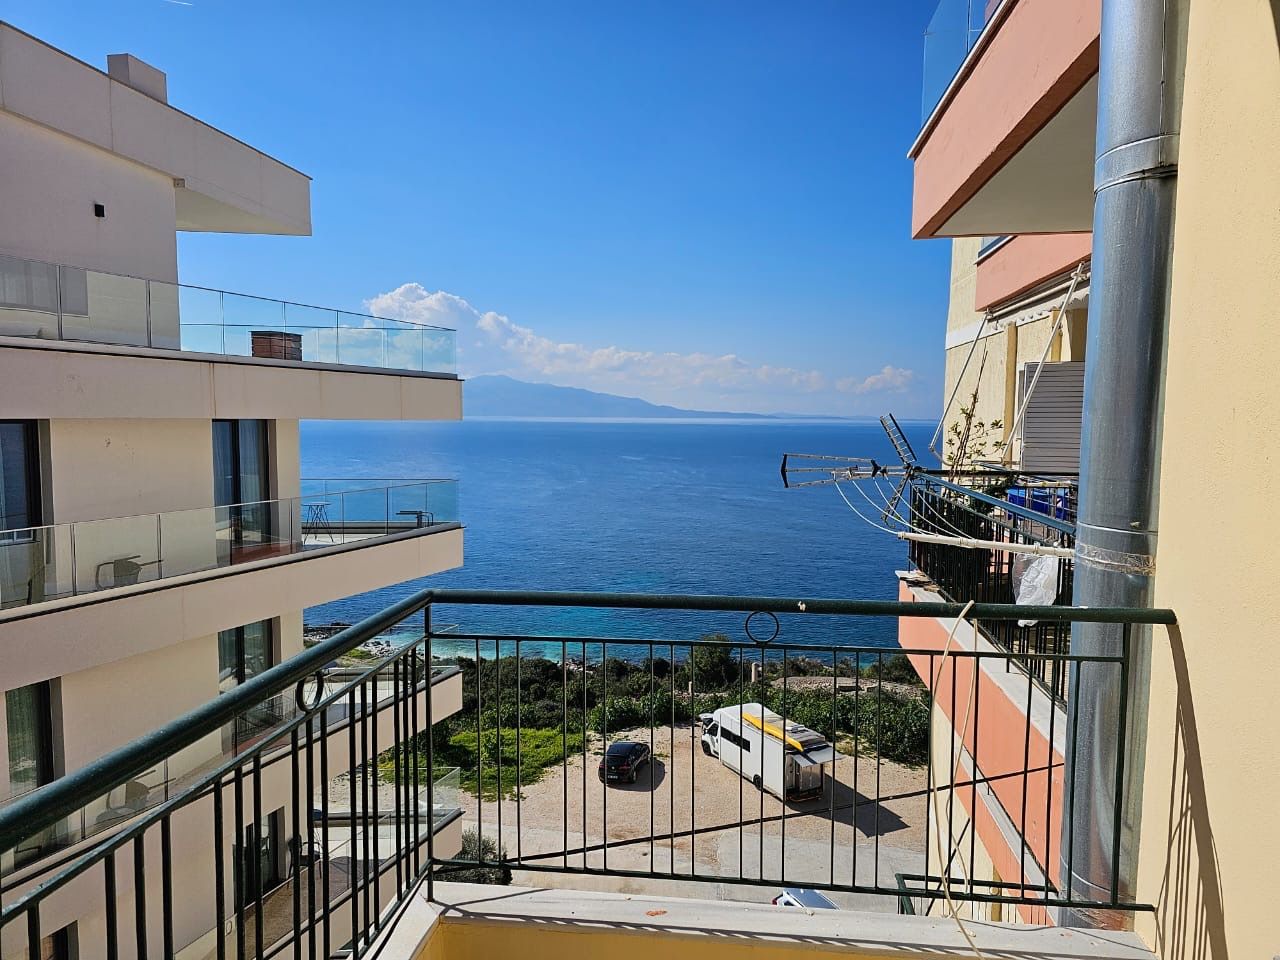 Albania Immobiliare In Saranda In Vendita, Con Una Vista Mare Magnifica, Situato In Un'ottima Posizione